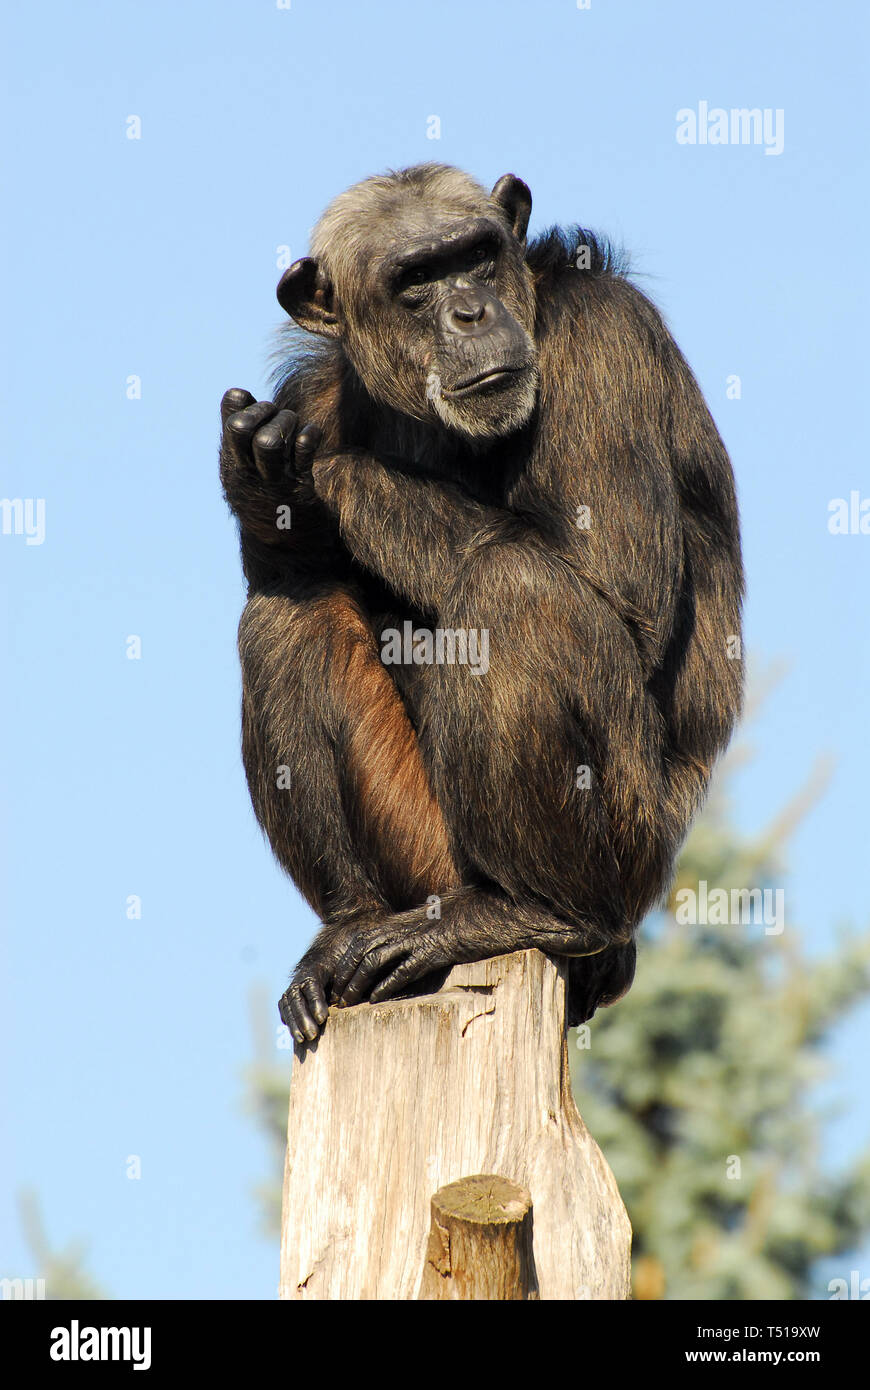 chimpanzee, Schimpanse, Pan troglodytes, csimpánz Stock Photo